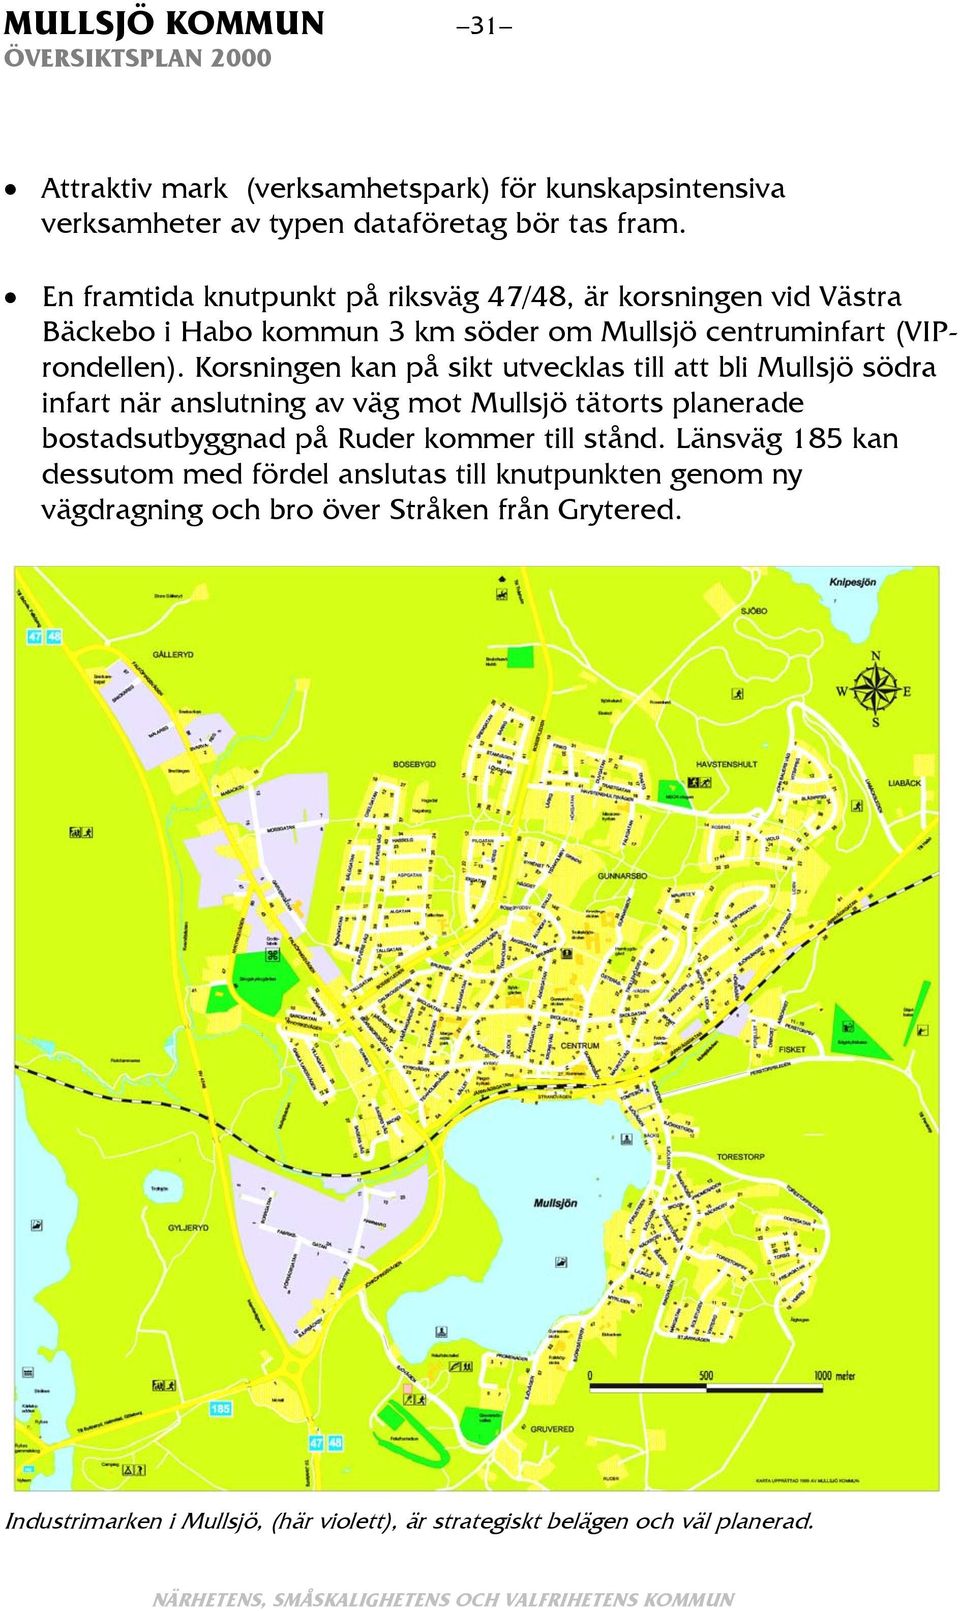 Korsningen kan på sikt utvecklas till att bli Mullsjö södra infart när anslutning av väg mot Mullsjö tätorts planerade bostadsutbyggnad på Ruder kommer